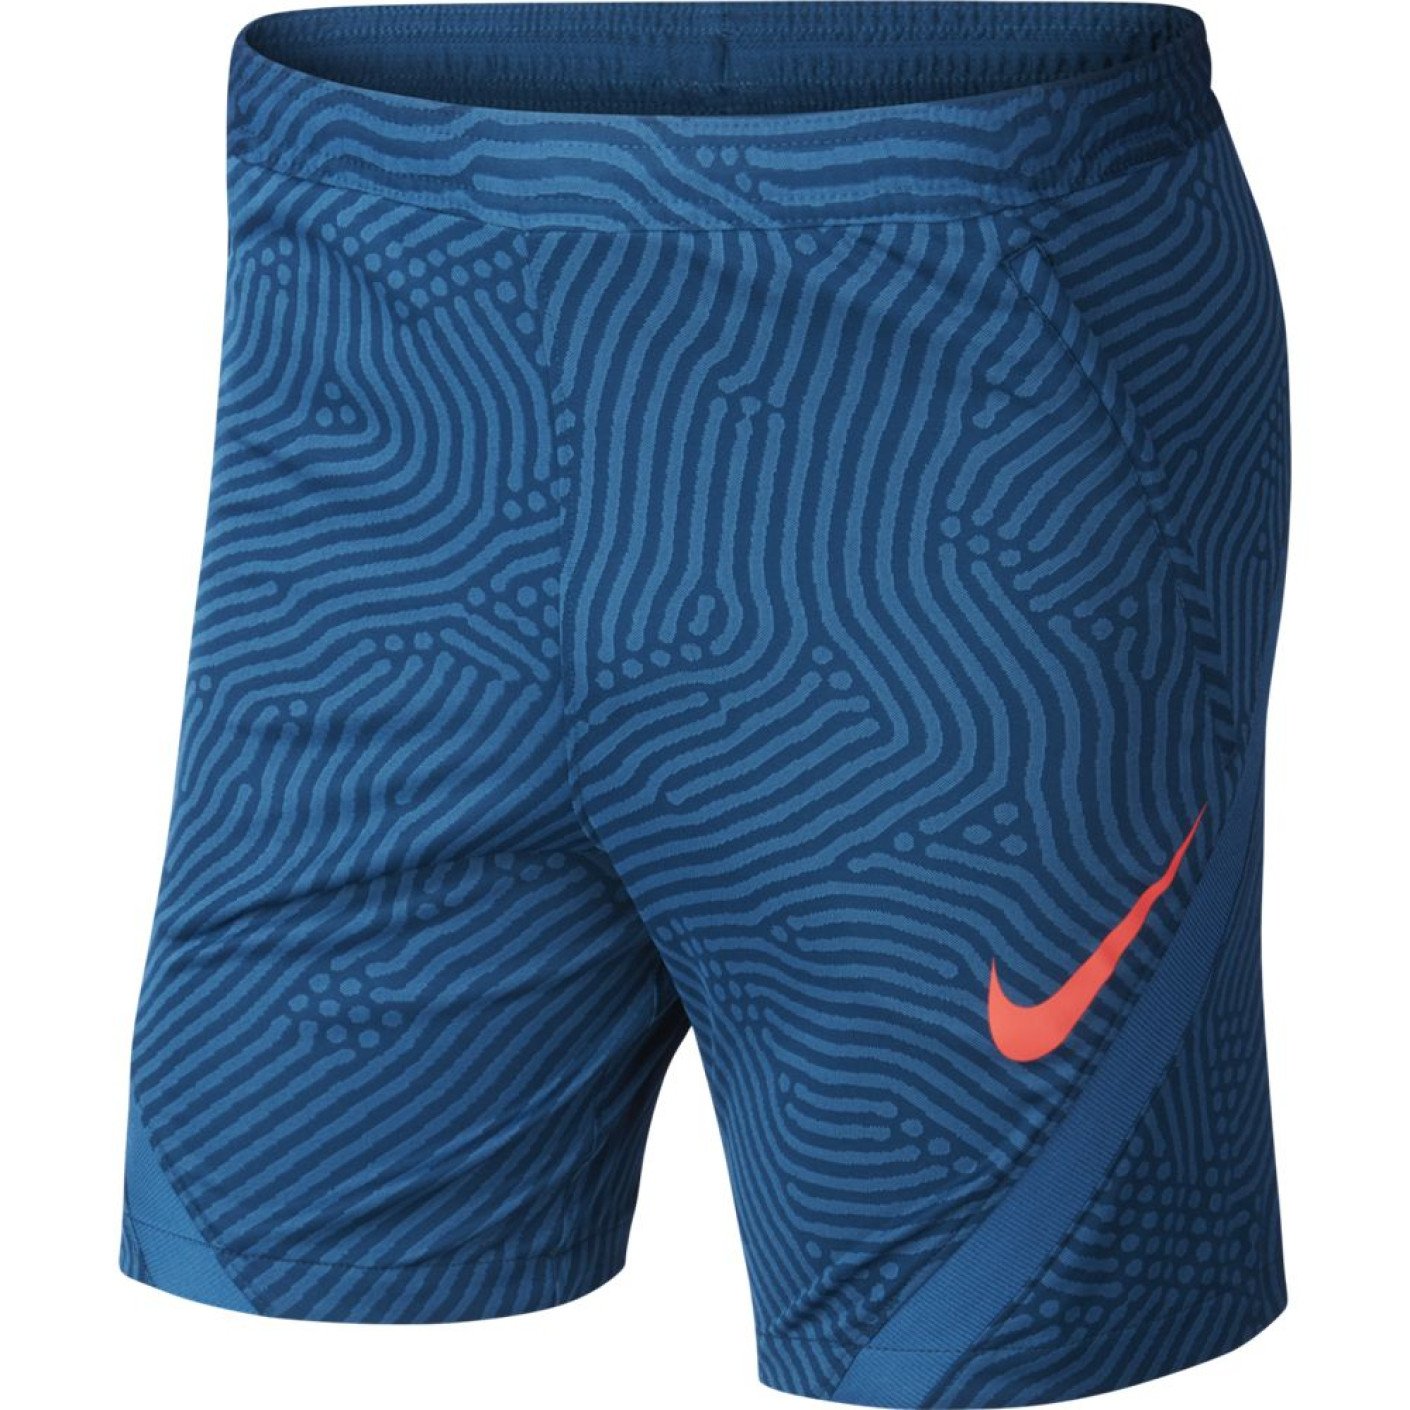 Nike Dry Strike Next Gen Trainingsbroekje KZ Blauw Roze